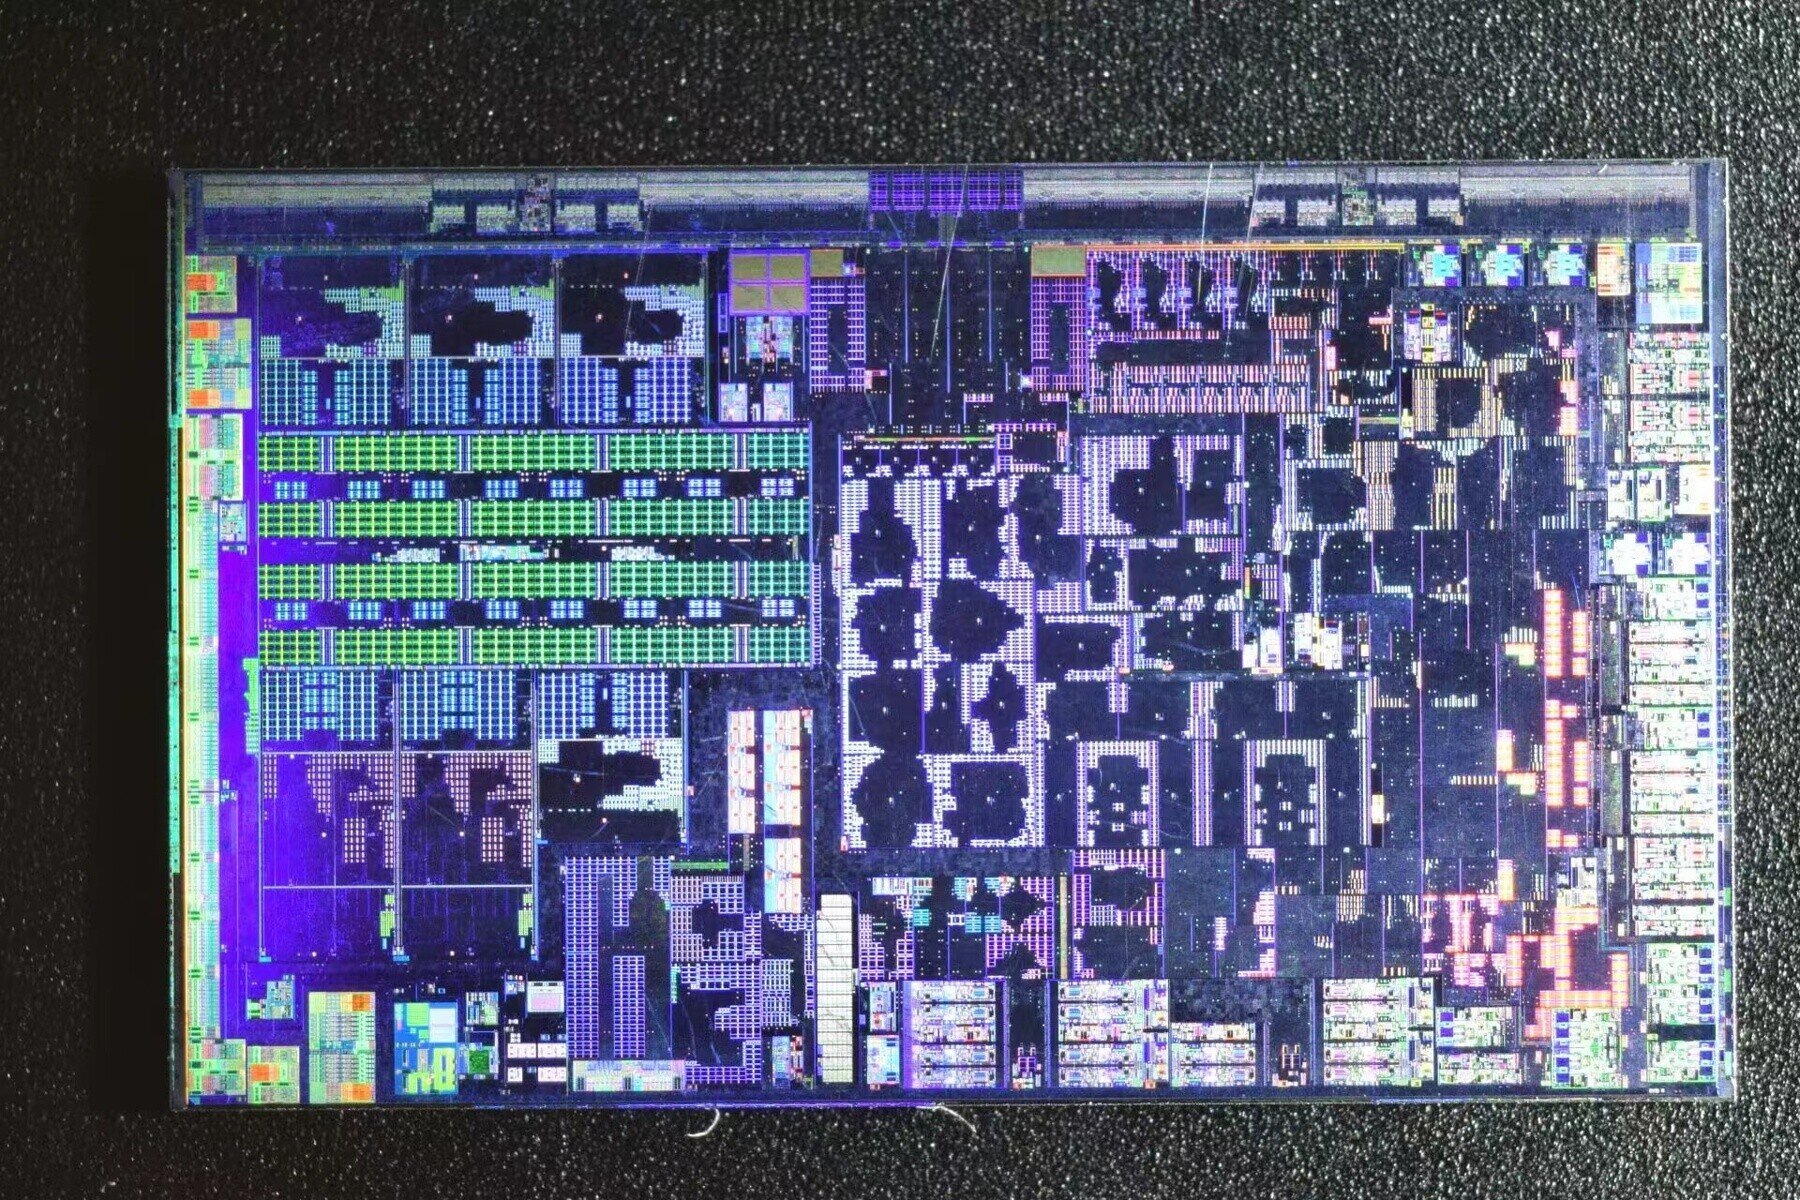 Μία εικόνα του die του «Phoenix 2» υποδεικνύει ότι πρόκειται για τον πρώτο «hybrid» επεξεργαστή της AMD